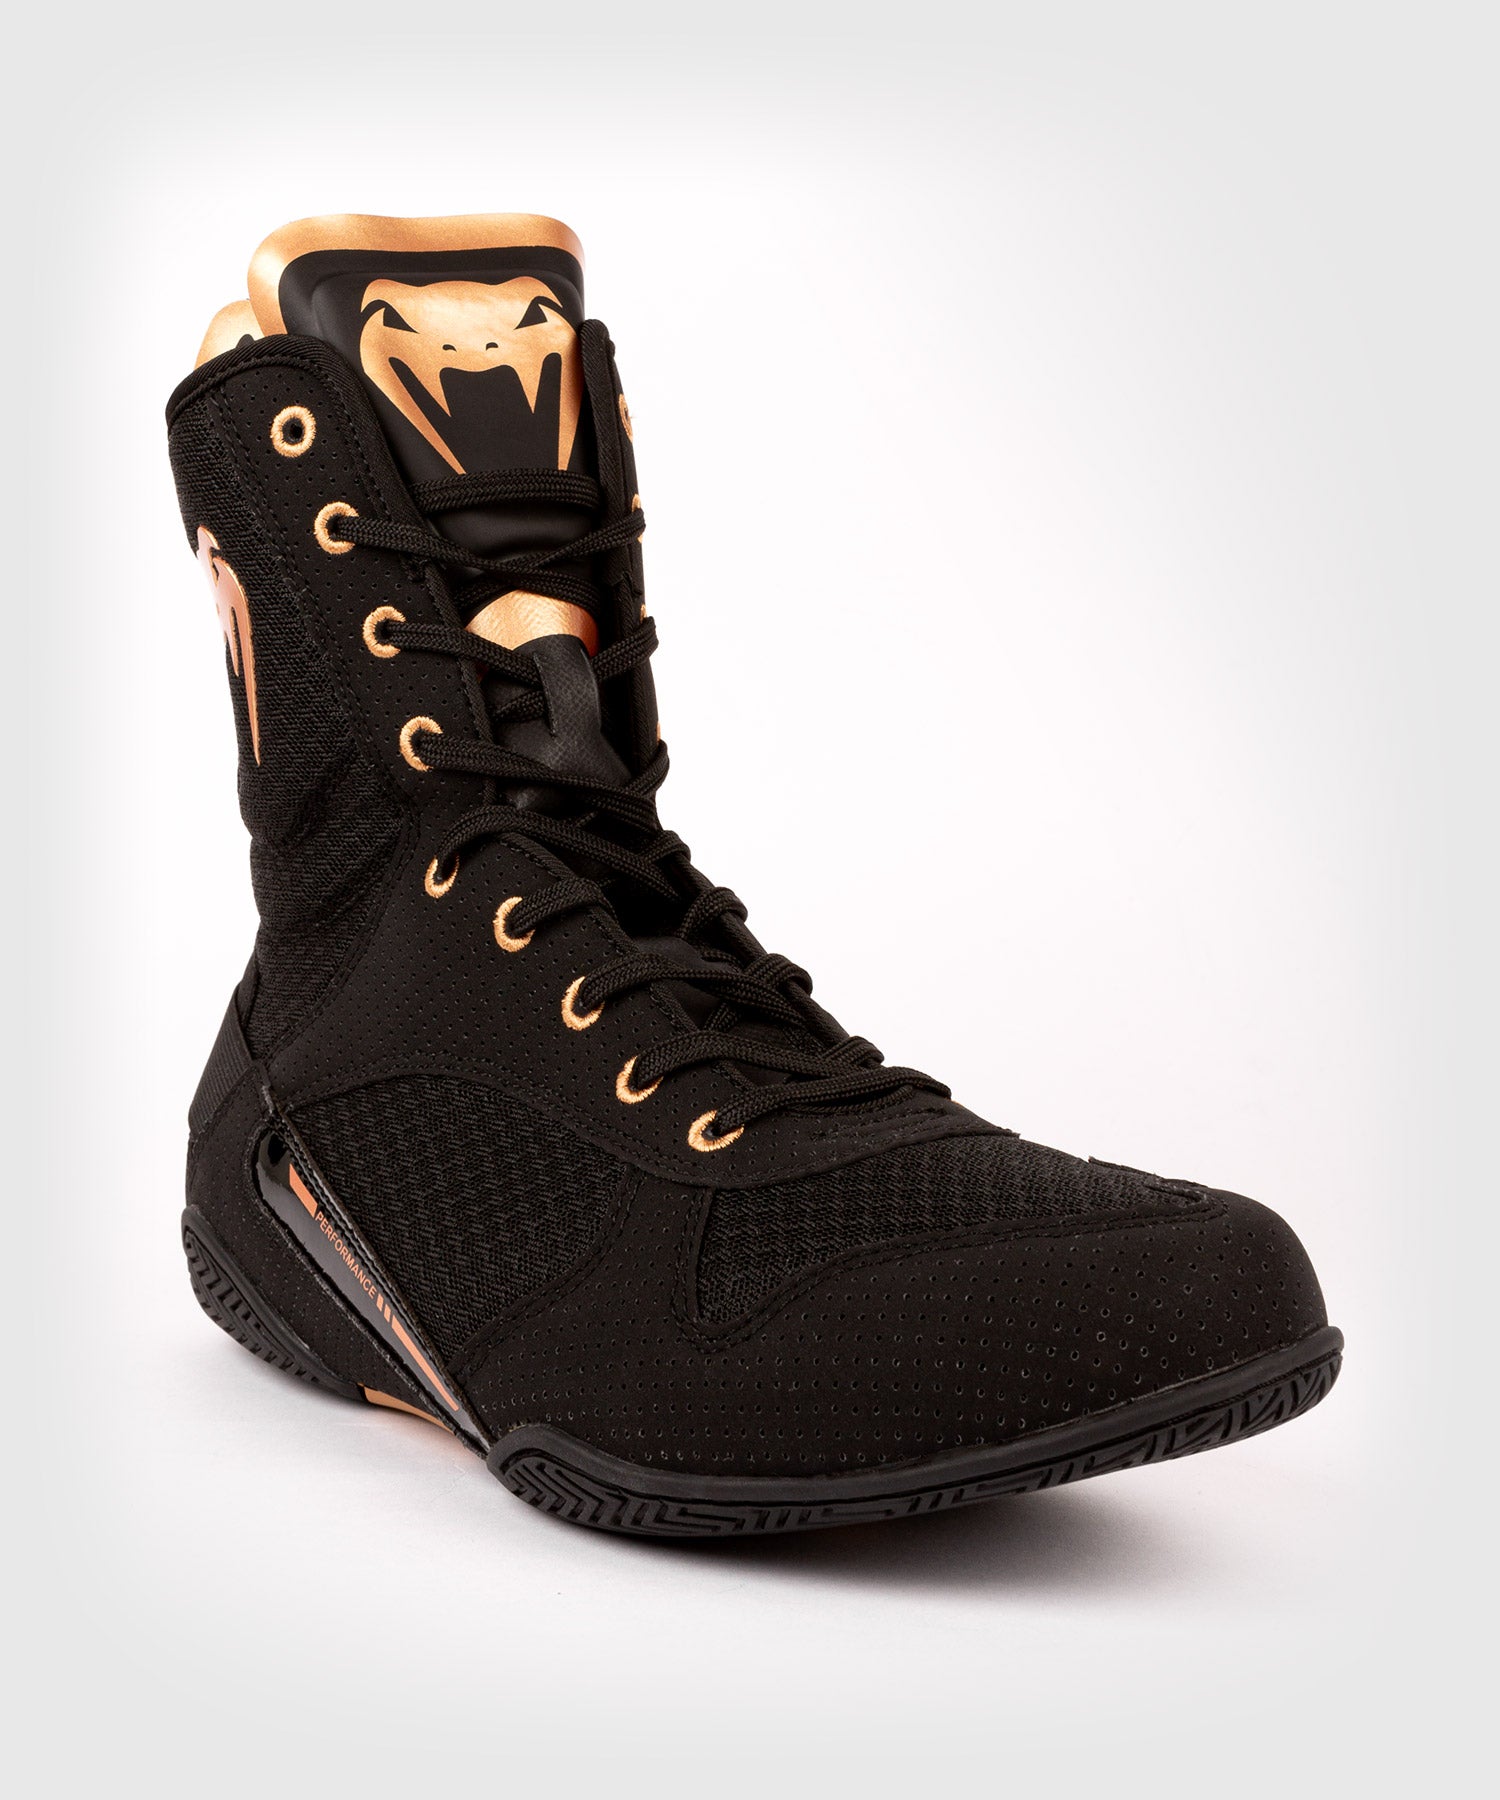 Chaussures de boxe Venum Elite - Noir/Or - Adisport